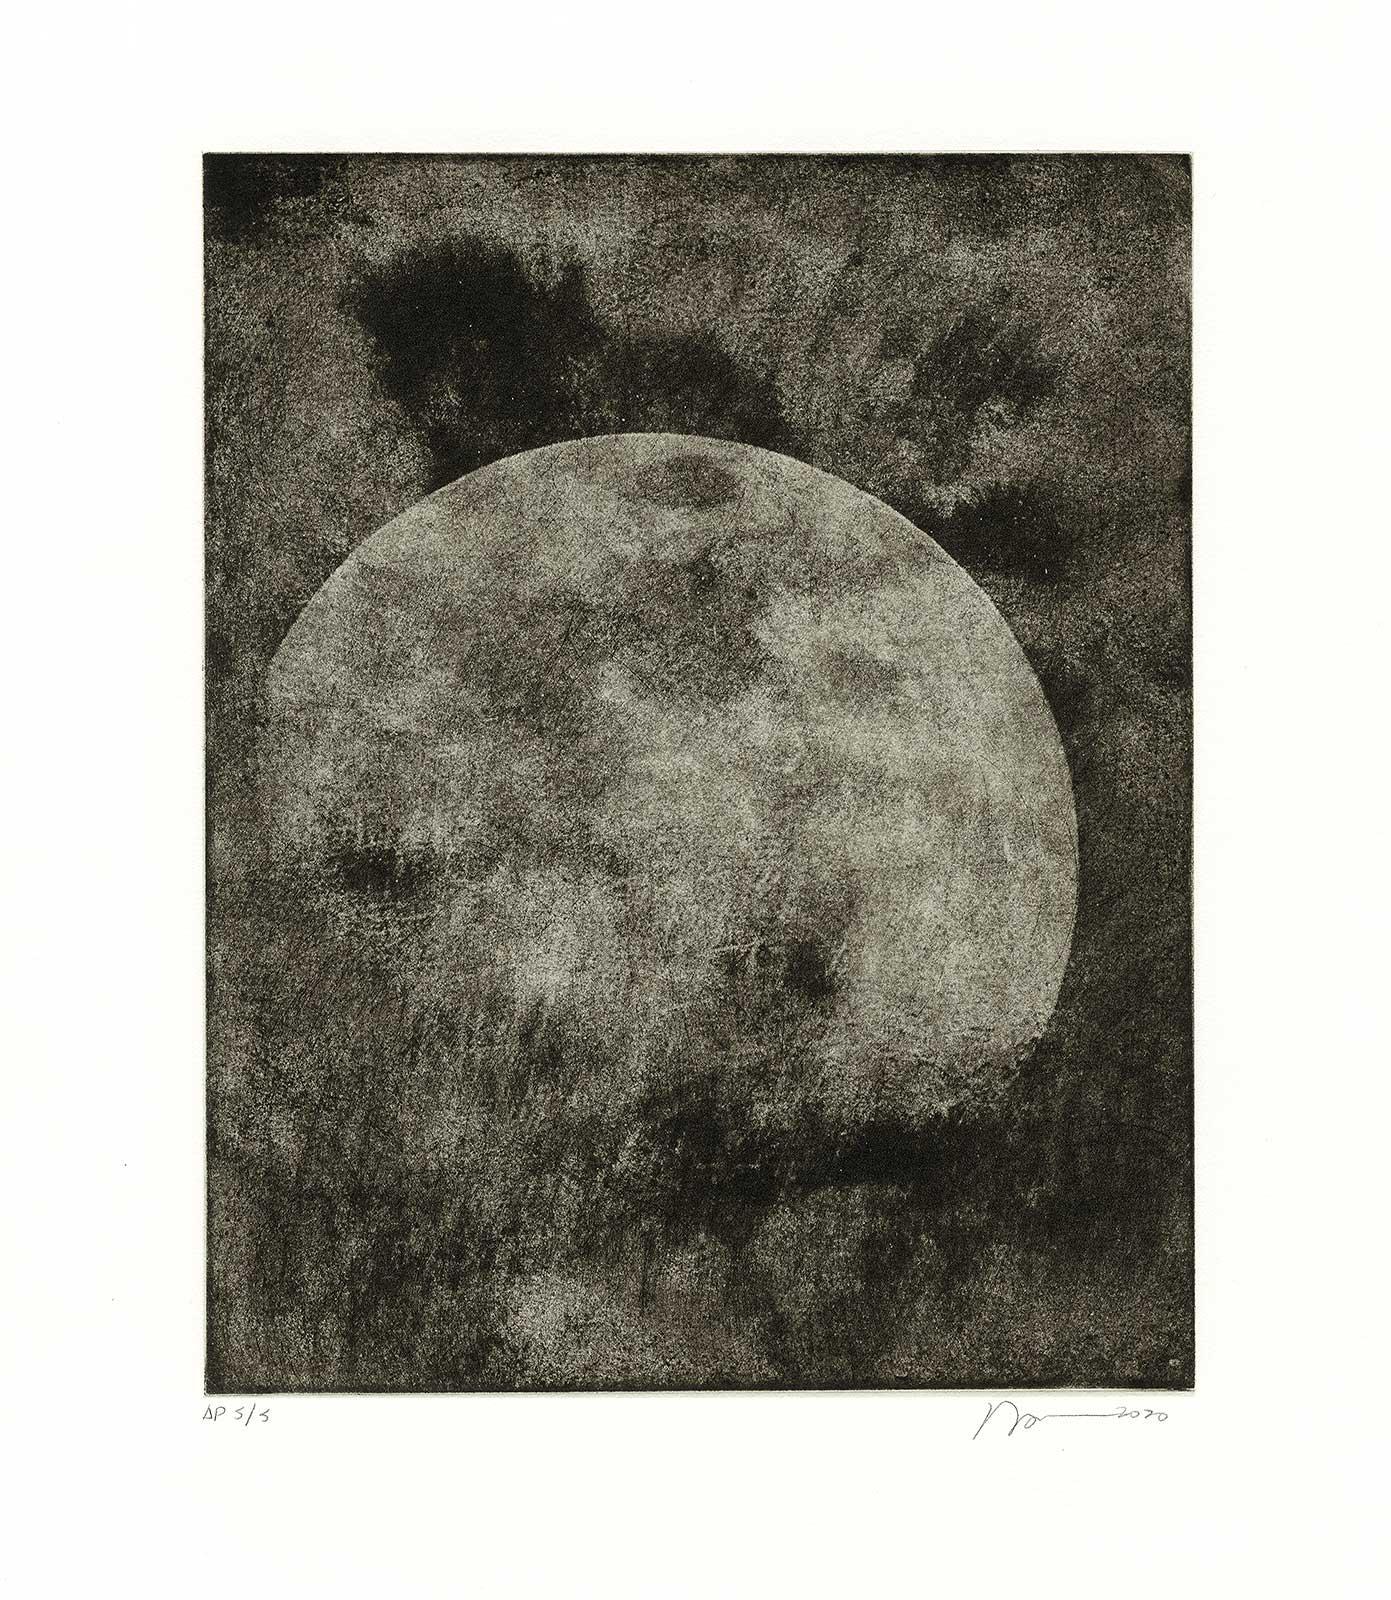 Ein Bild aus der Kincaid-Mondserie. Eine Auflage von 10

Im Laufe von drei Jahrzehnten hat Ted Kincaid die Vorstellung einer objektiven fotografischen Aufzeichnung systematisch unterlaufen und das Spiel zwischen Malerei und Fotografie untersucht.